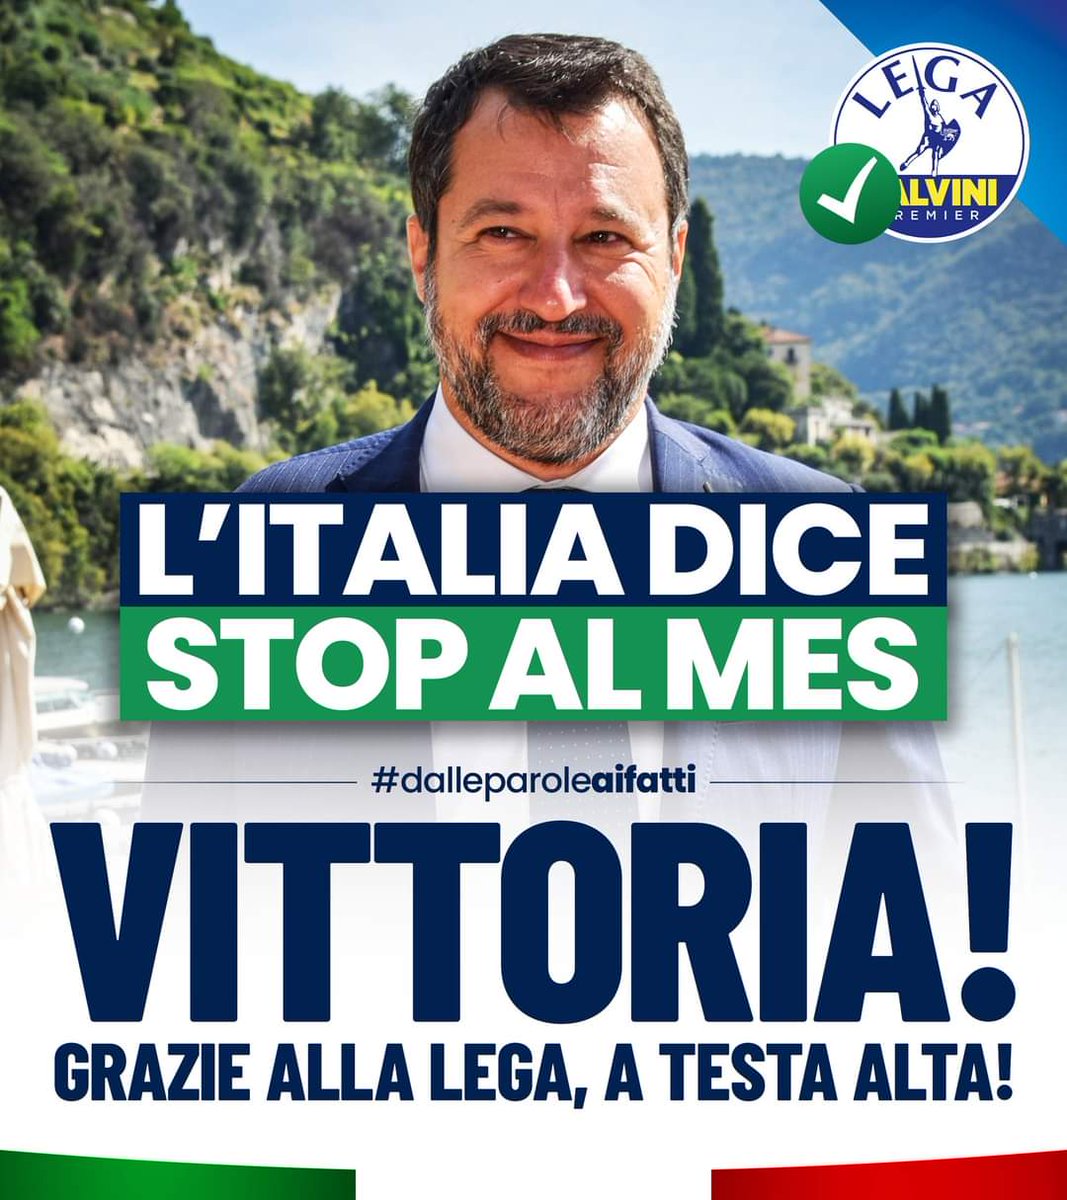 Era dai tempi di Sigonella che l'Italia non difendeva la propria sovranità.
Bloccando il MES e i suoi effetti disastrosi, abbiamo detto all'Europa che non siamo più disposti a sottometterci a qualcosa che ci danneggia.
Un risultato storico ottenuto dalla Lega e da Matteo Salvini.